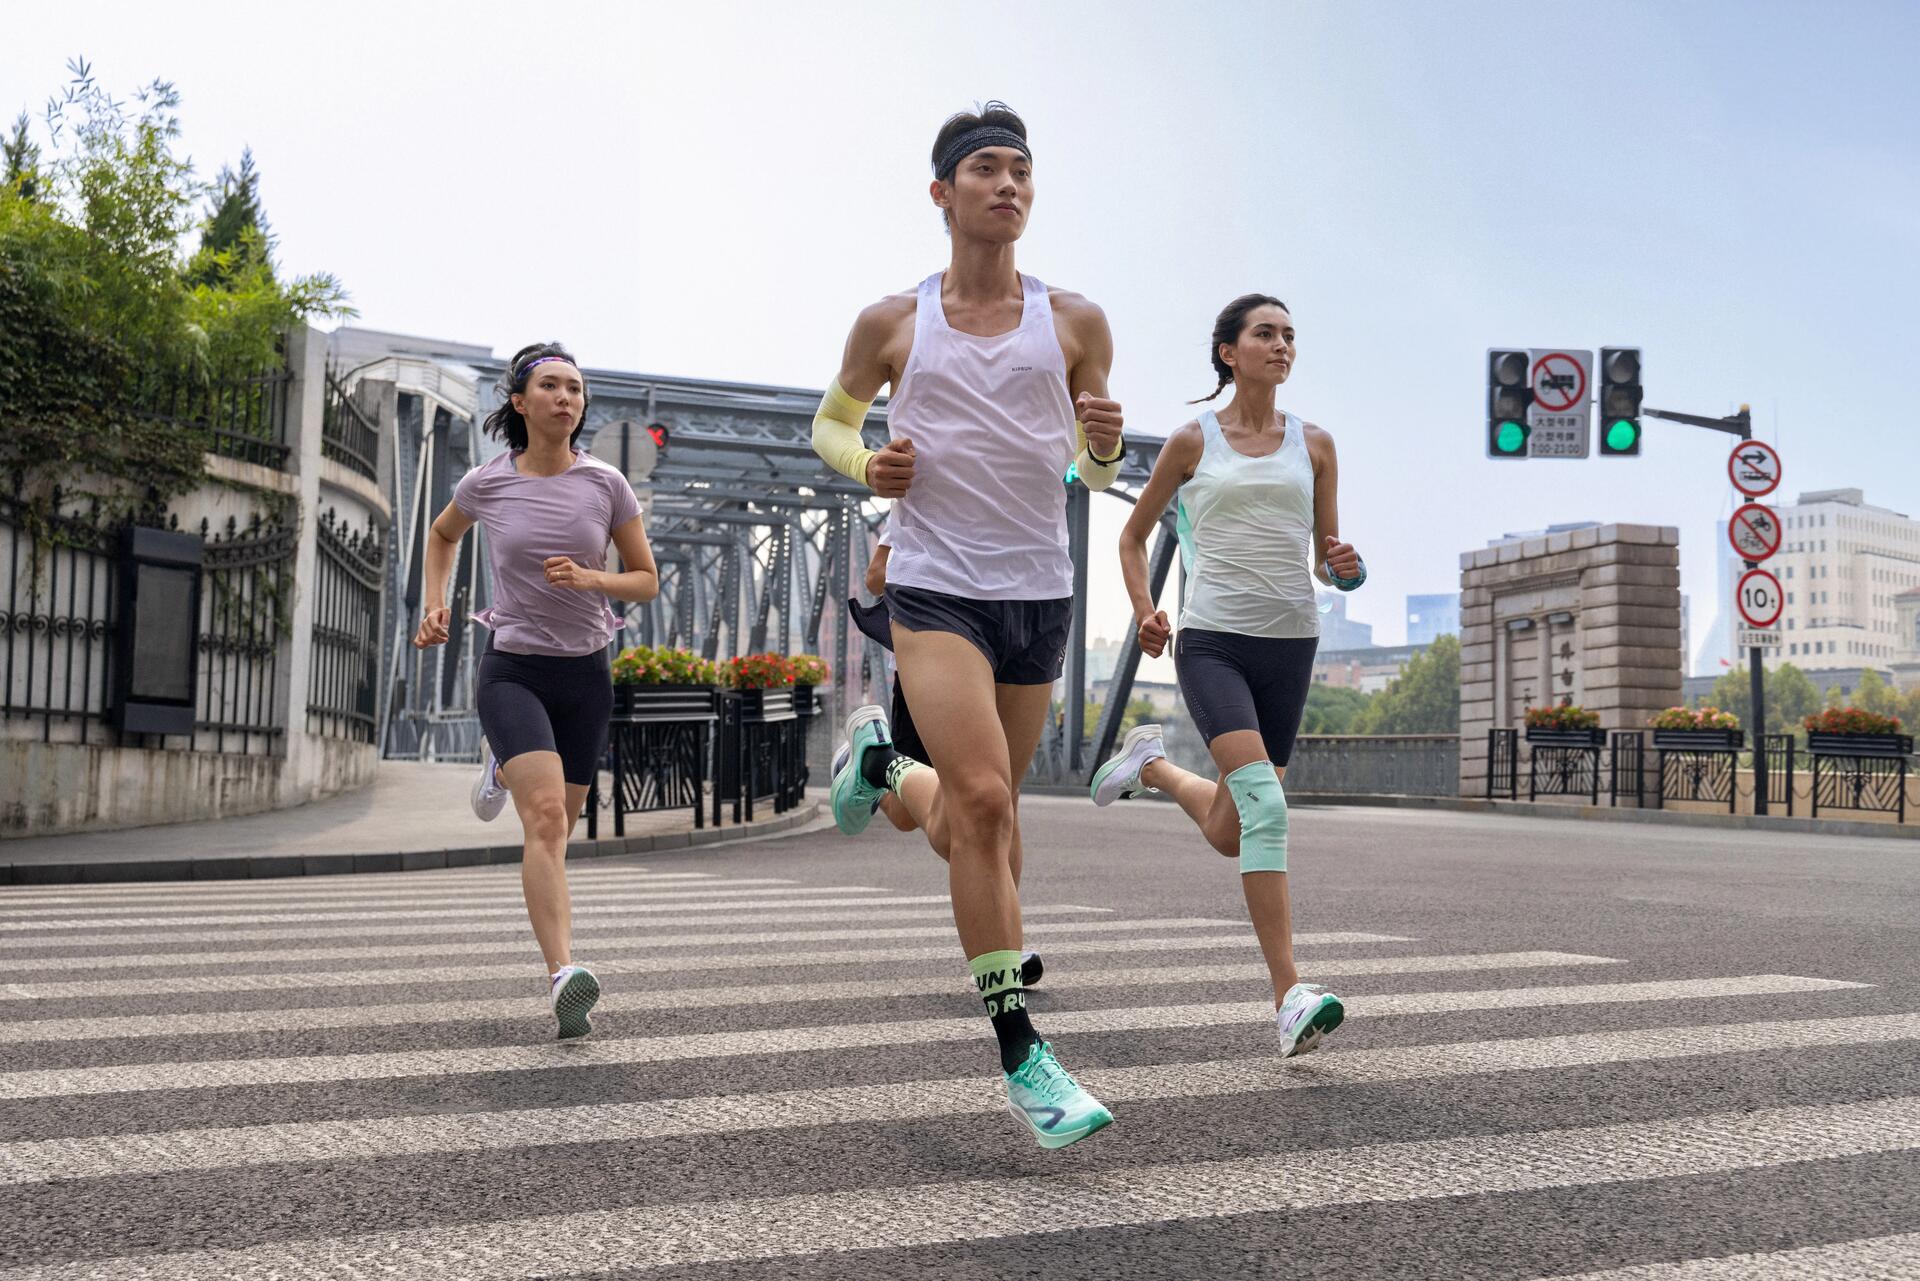 Grupa ludzi biegająca w butach do biegania i sportowym stroju